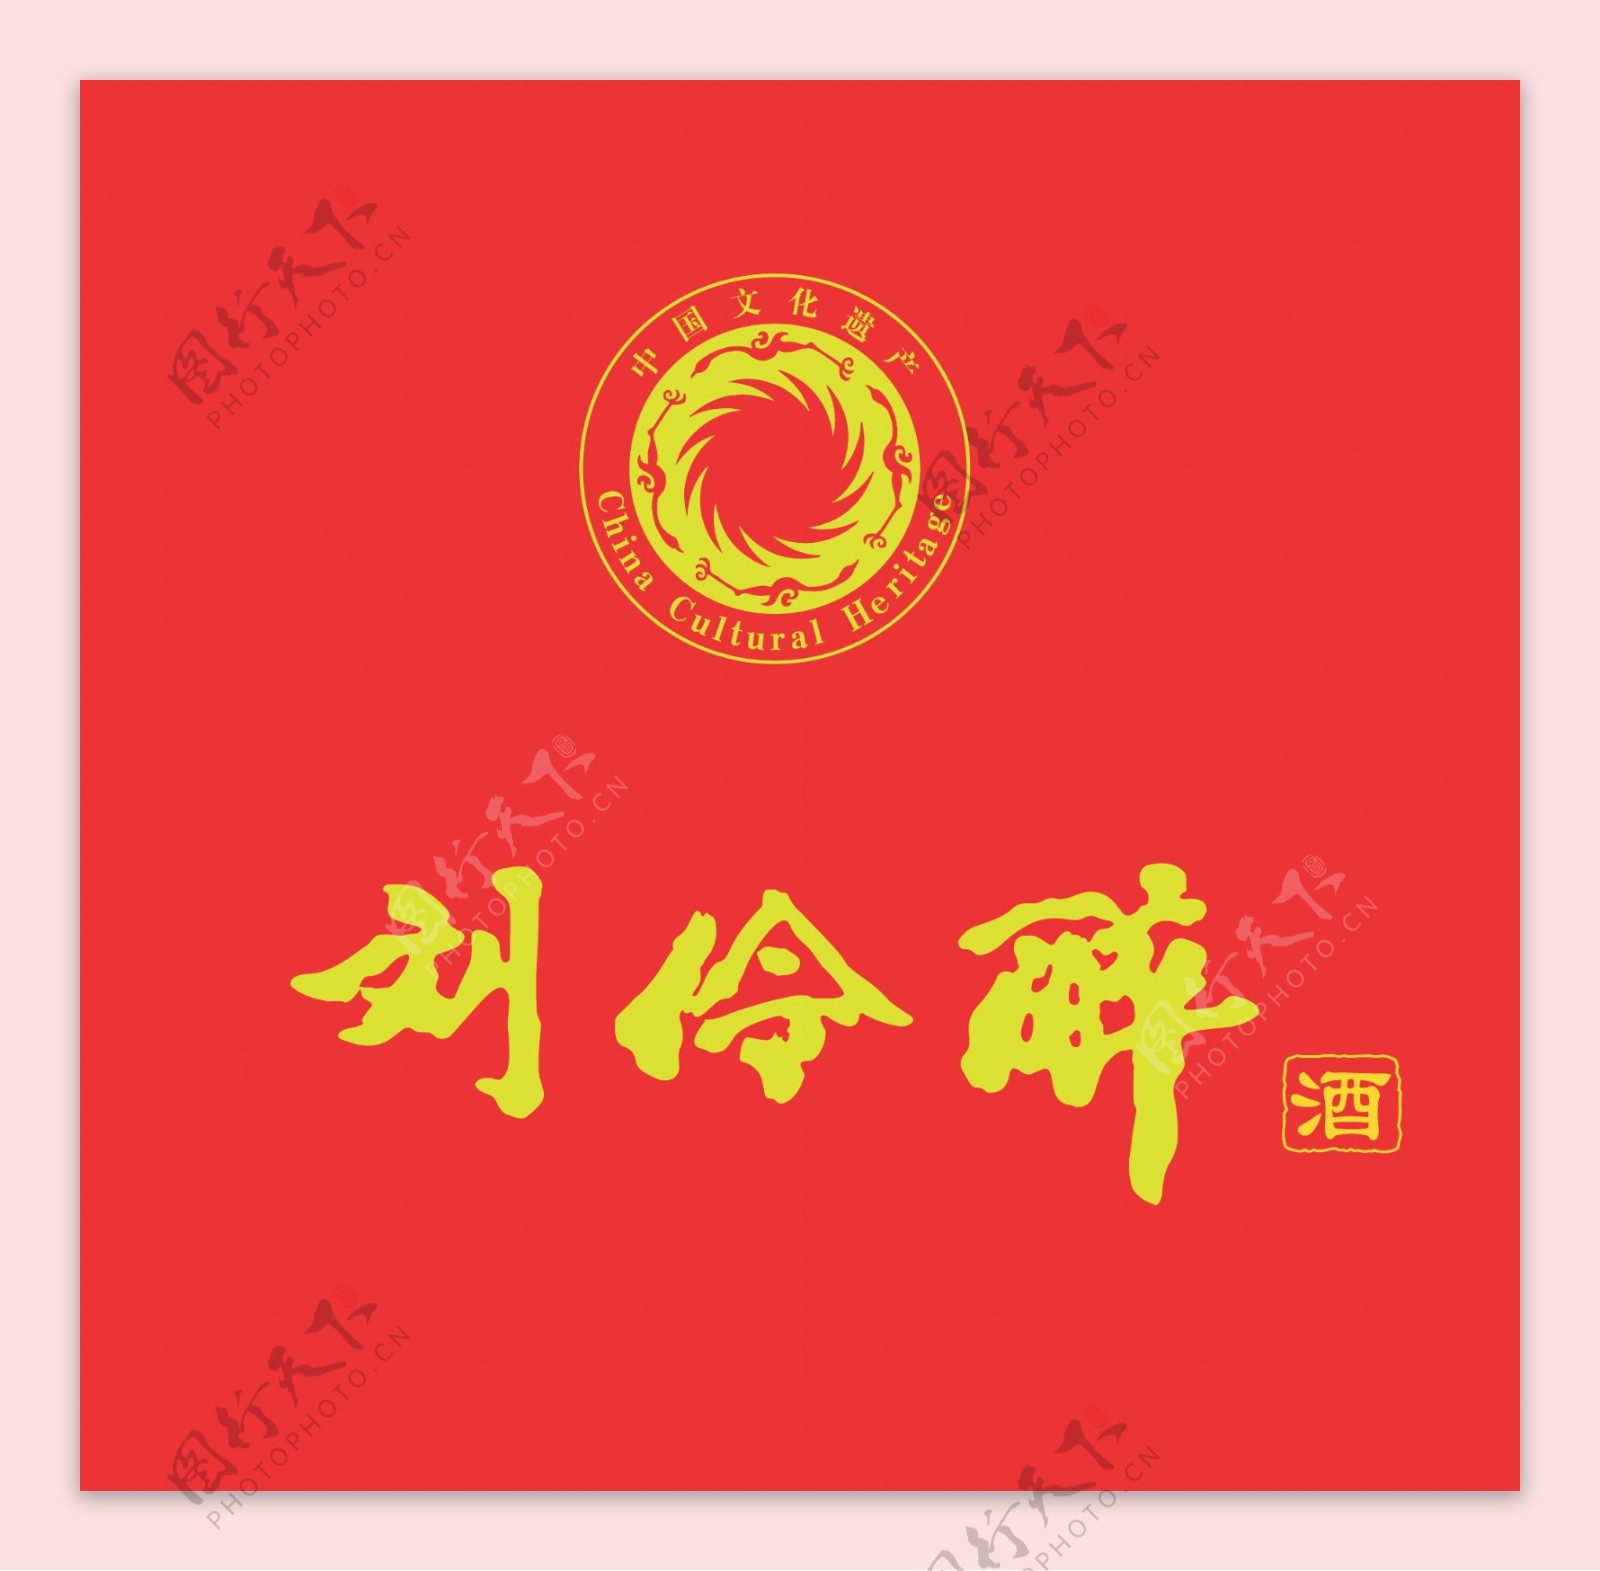 刘伶醉刘伶醉酒刘伶醉logo